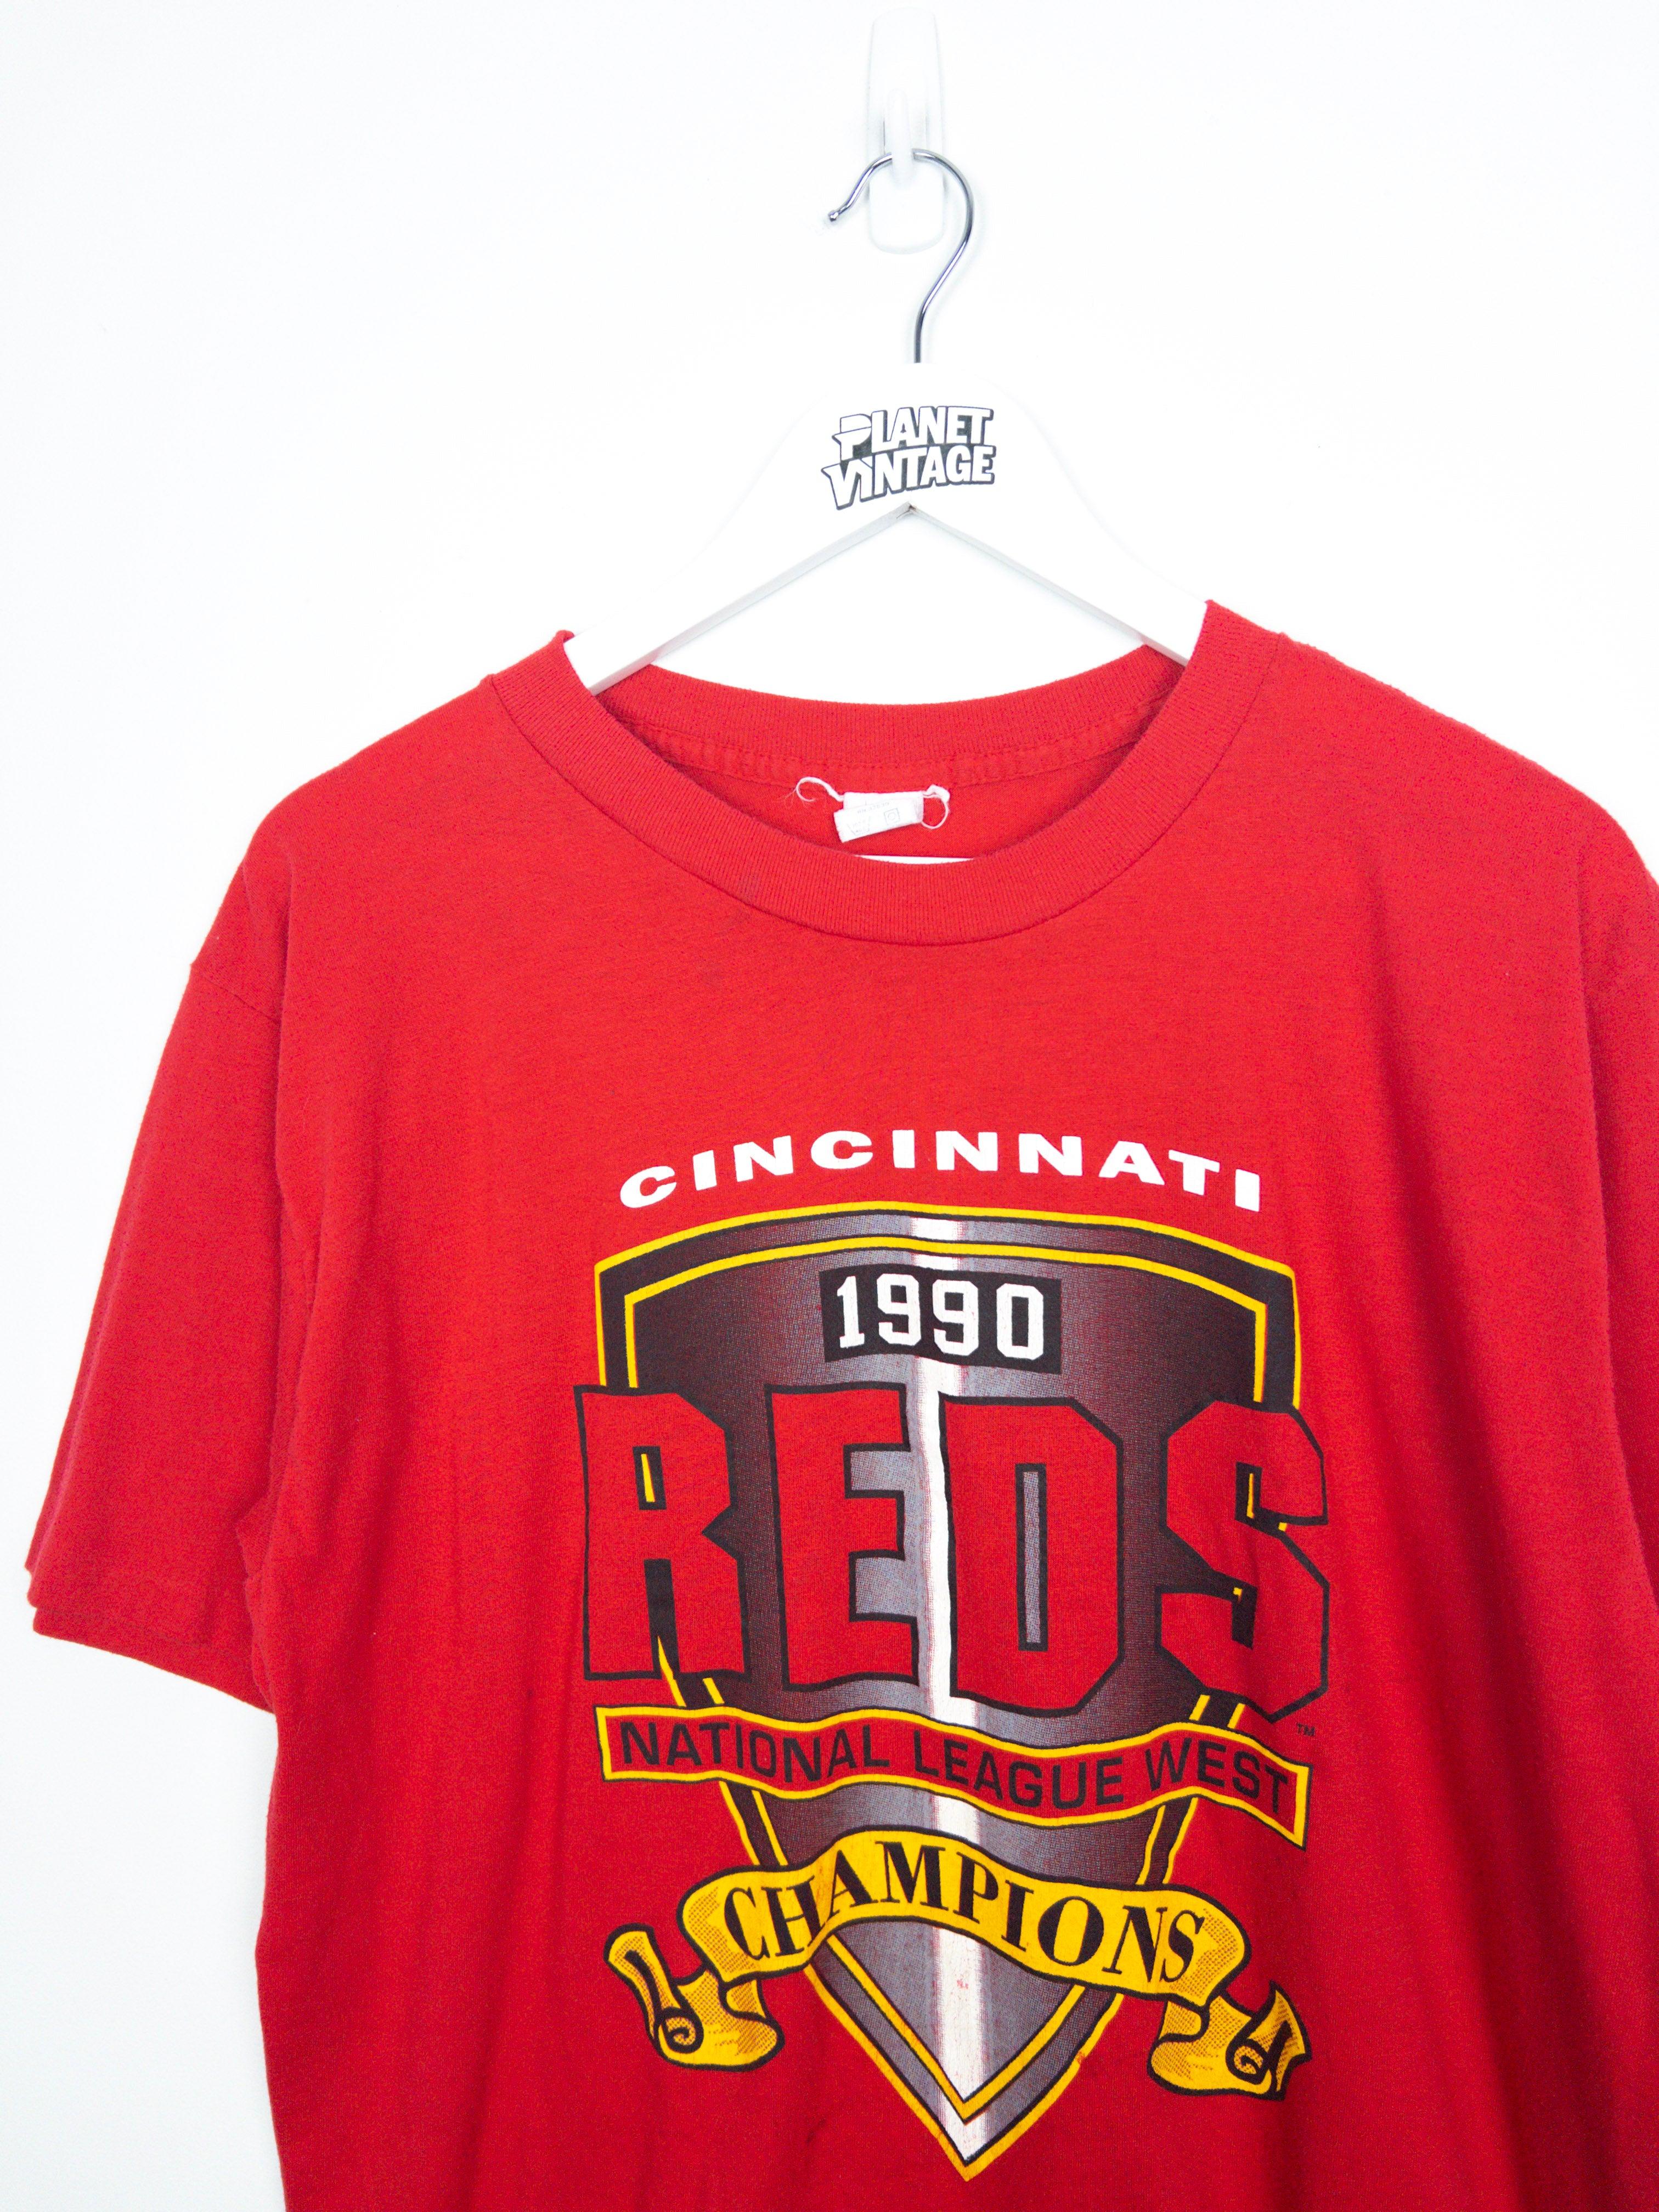 Vintage Cincinnati Reds 1990 Tee (L) - Planet Vintage Store